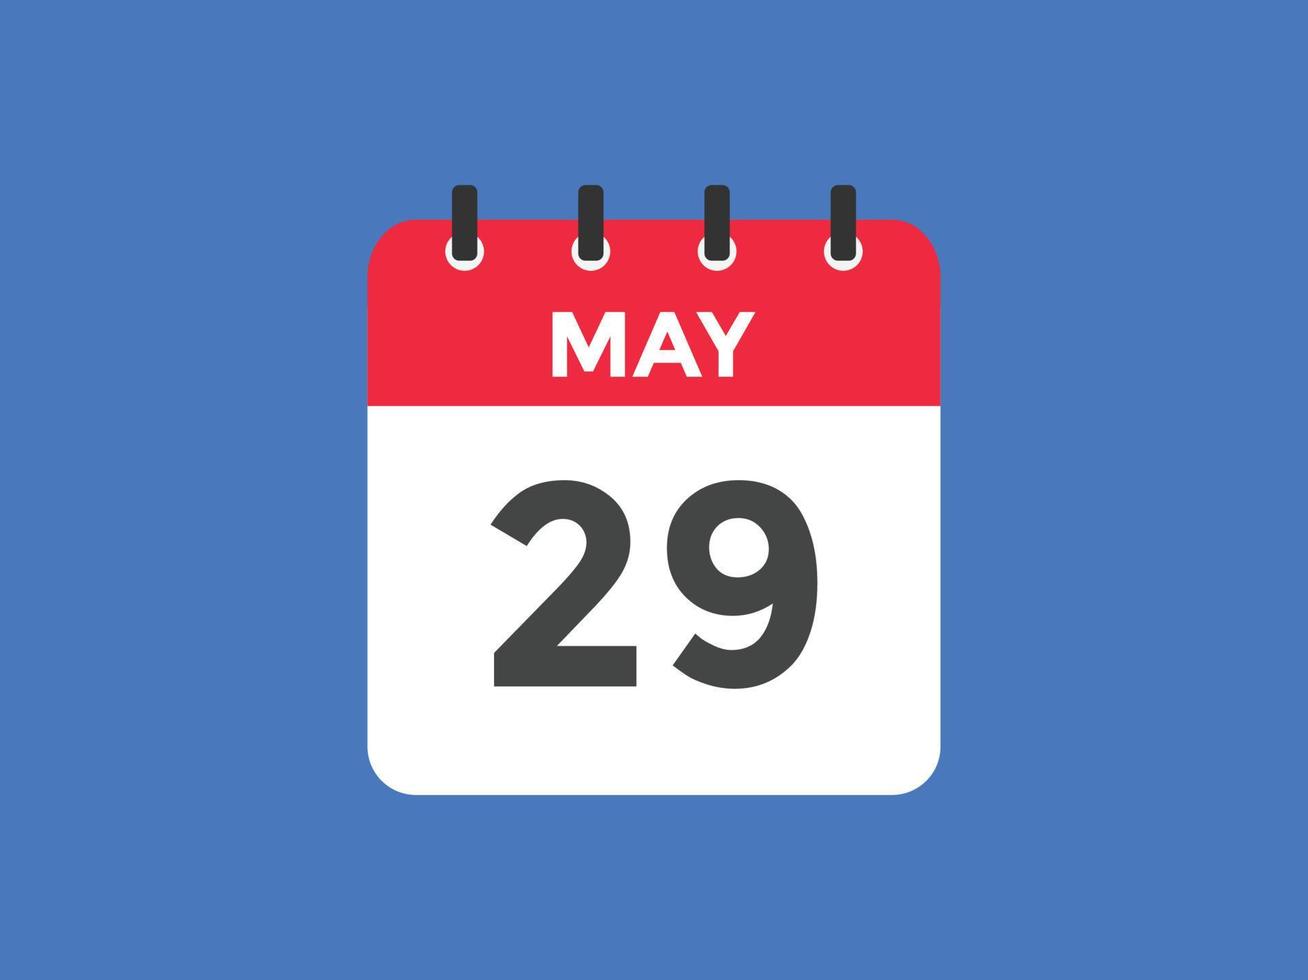 may 29 calendar reminder. 29th may daily calendar icon template. Calendar 29th may icon Design template. Vector illustration